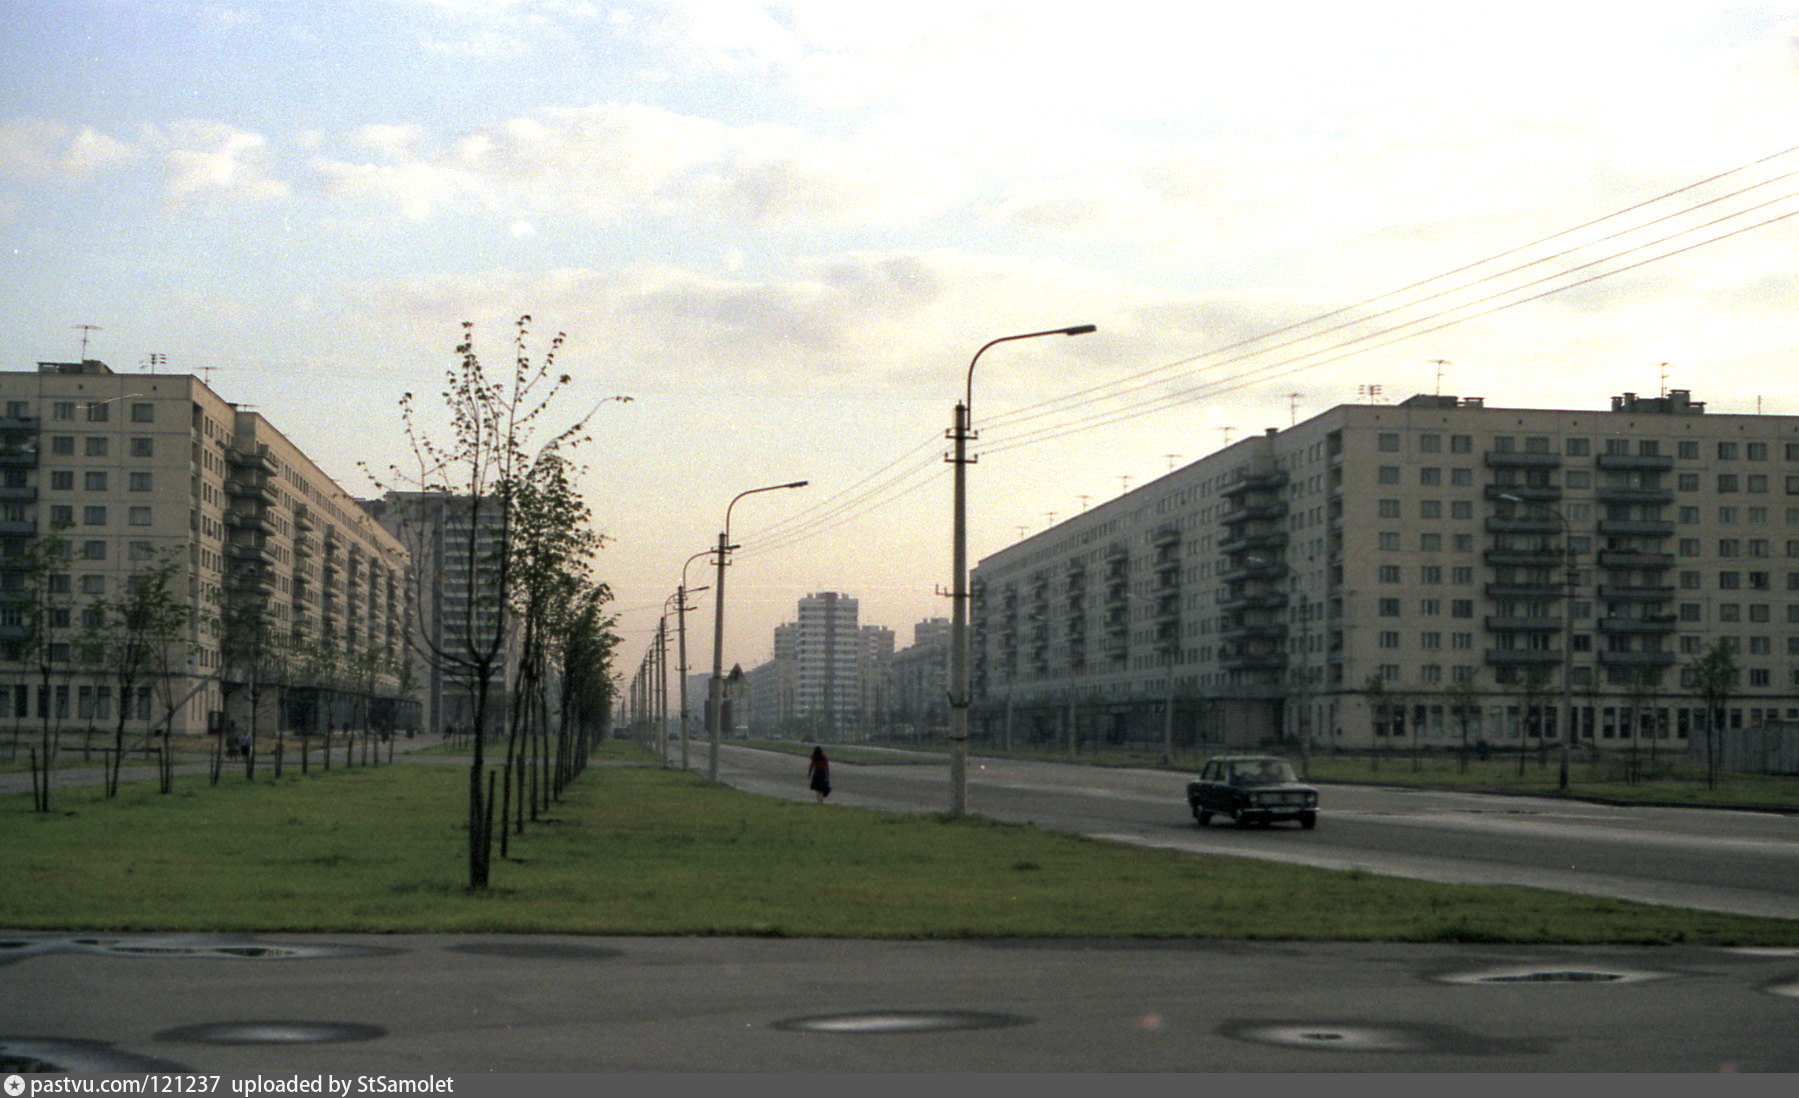 метро гражданский проспект санкт петербург